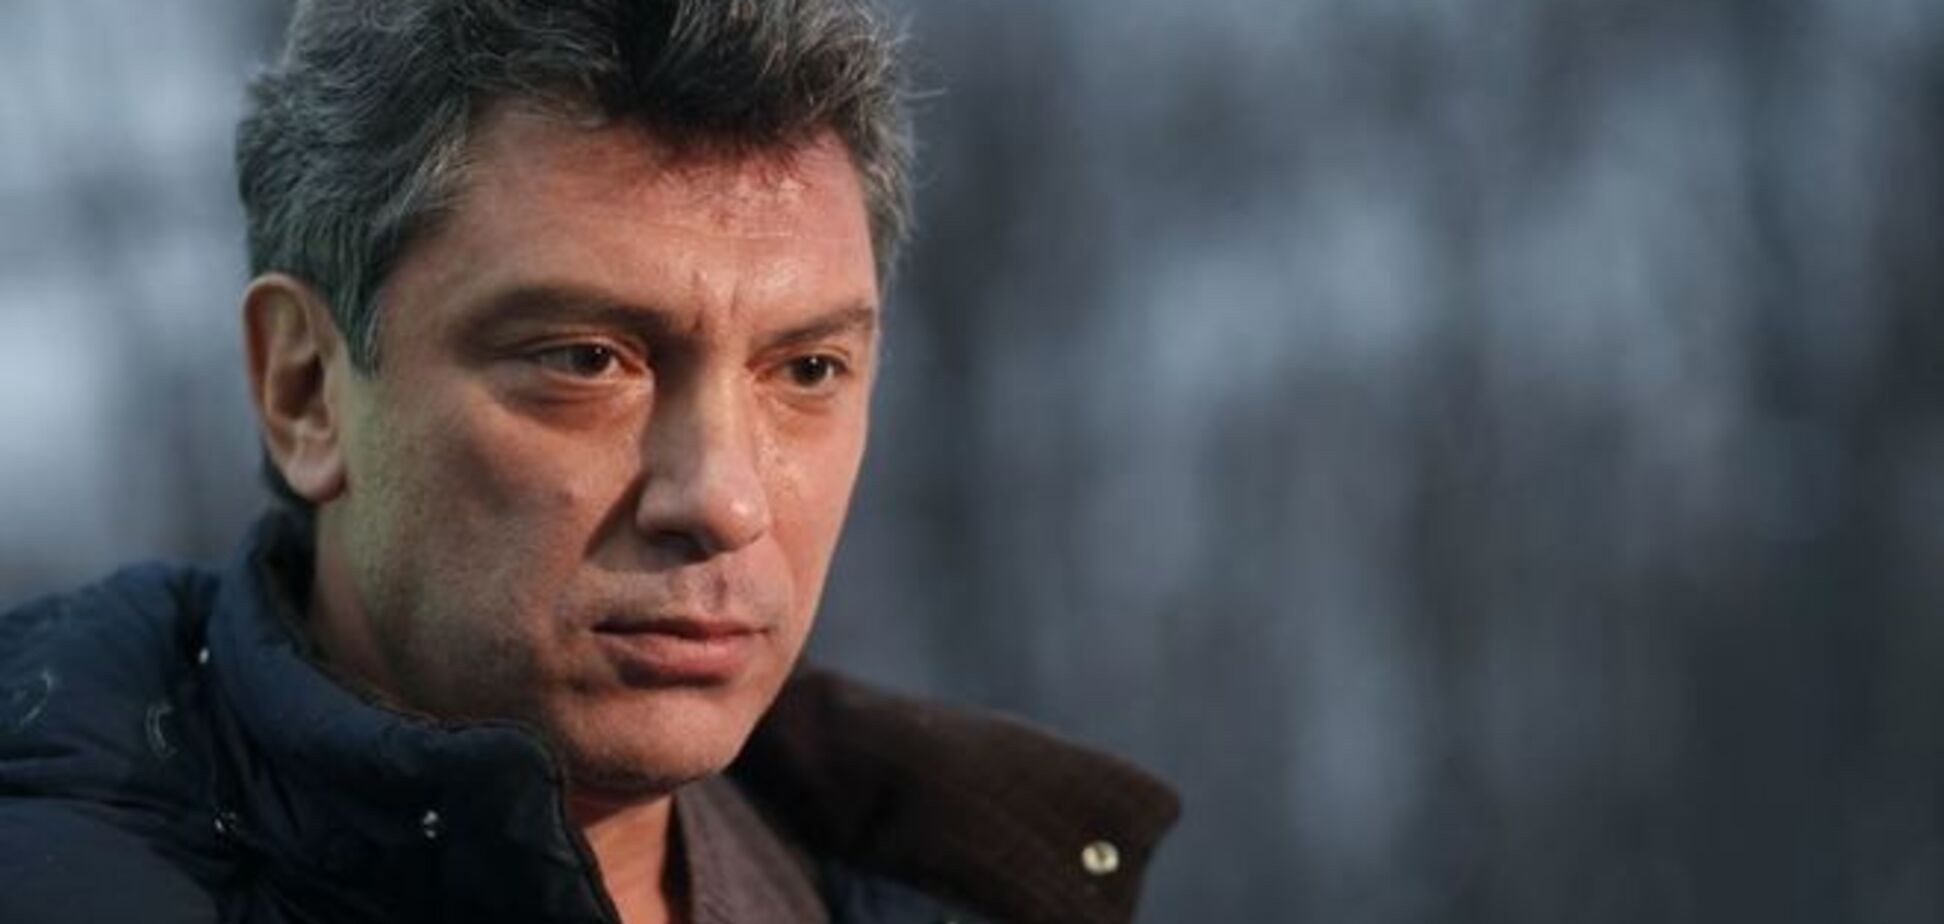 Березовский вел наружное наблюдение за Немцовым 